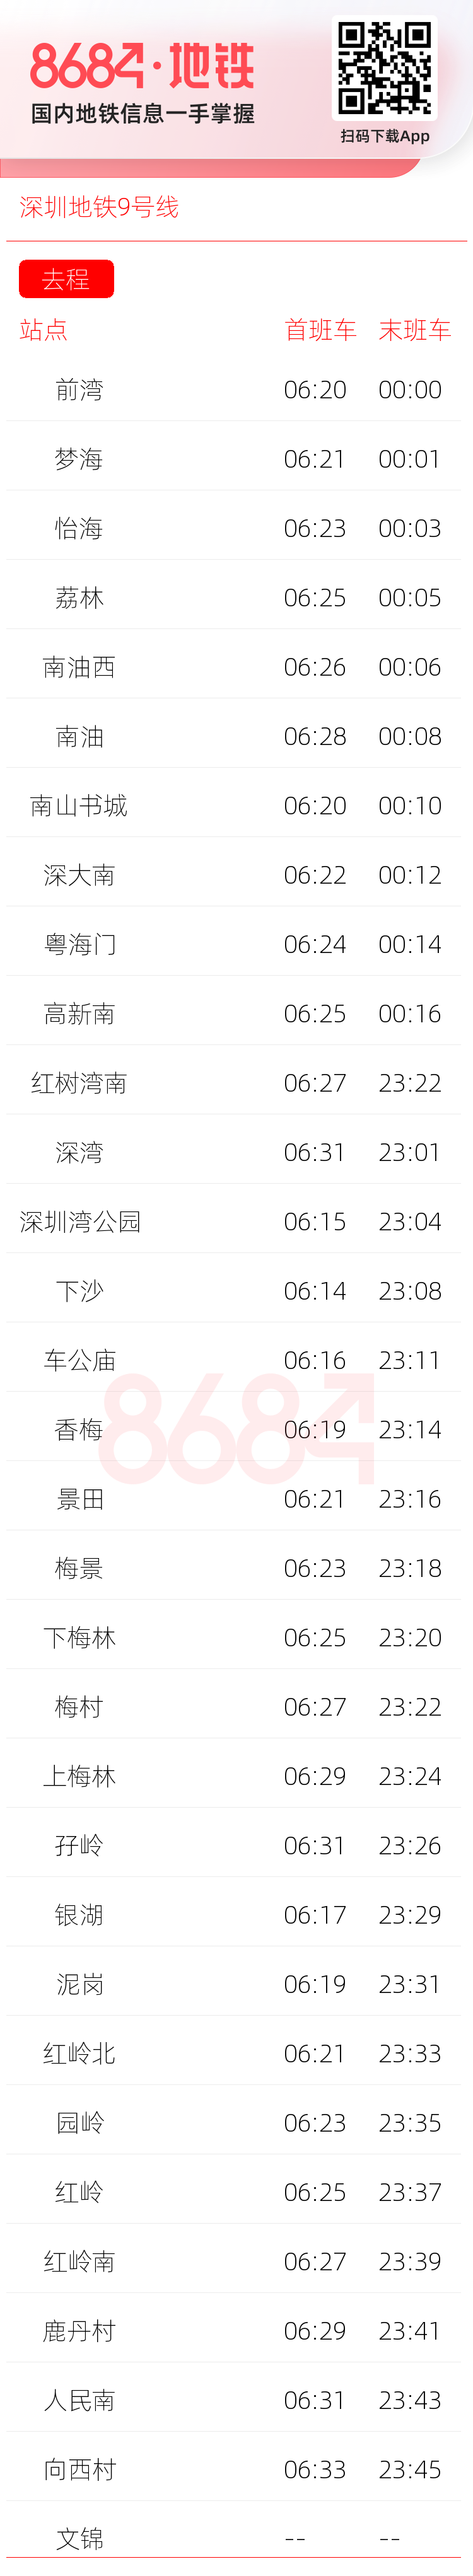 深圳地铁9号线运营时间表